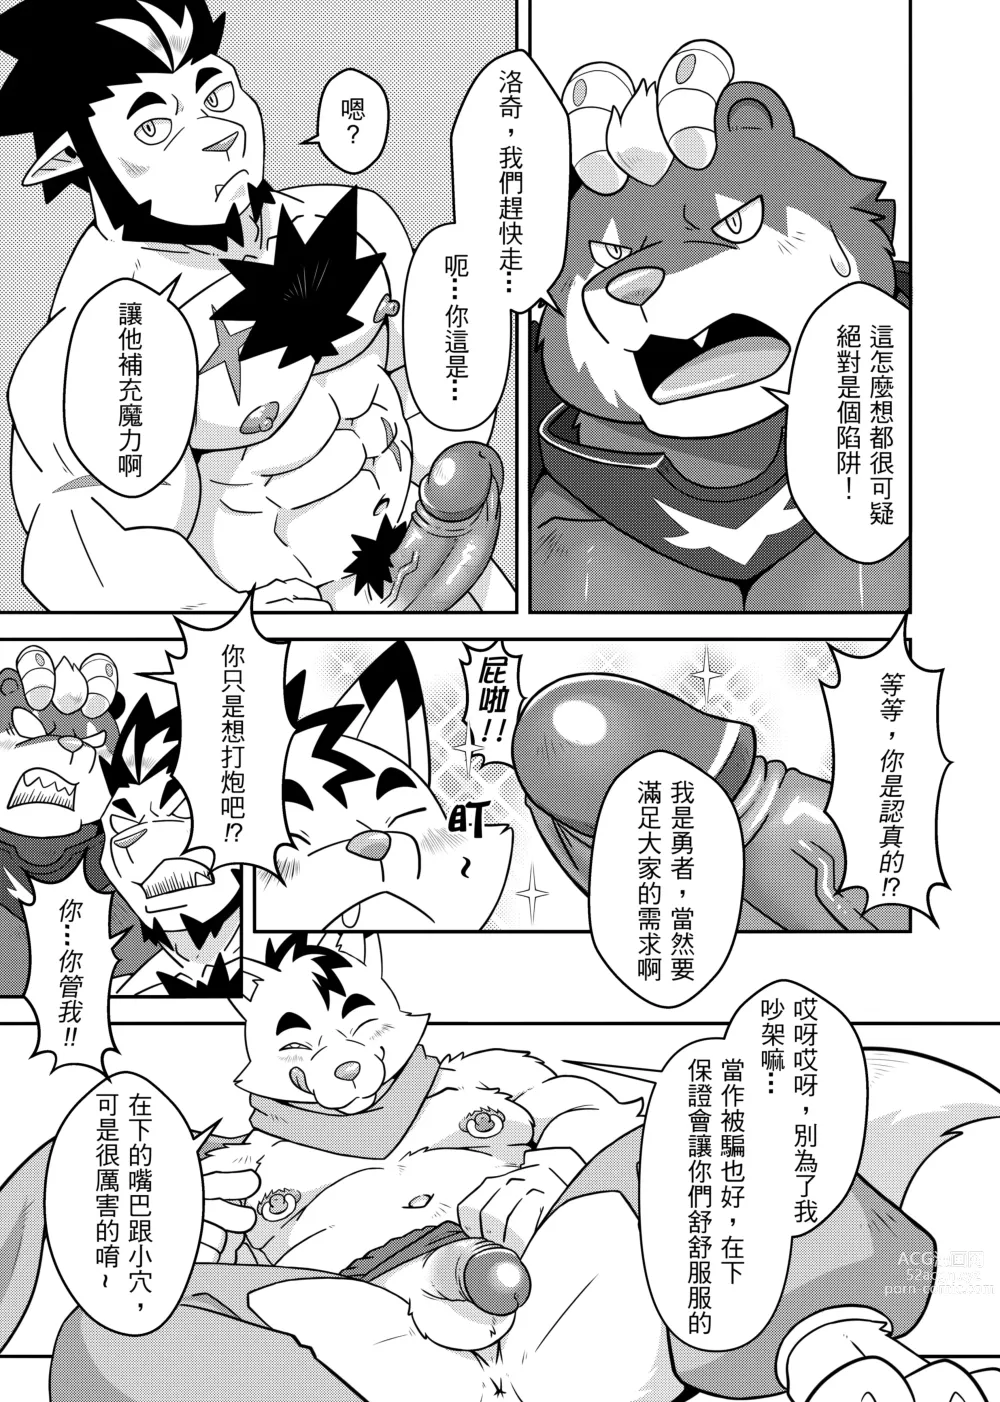 Page 11 of doujinshi 勇者的大小只有魔王塞得下3